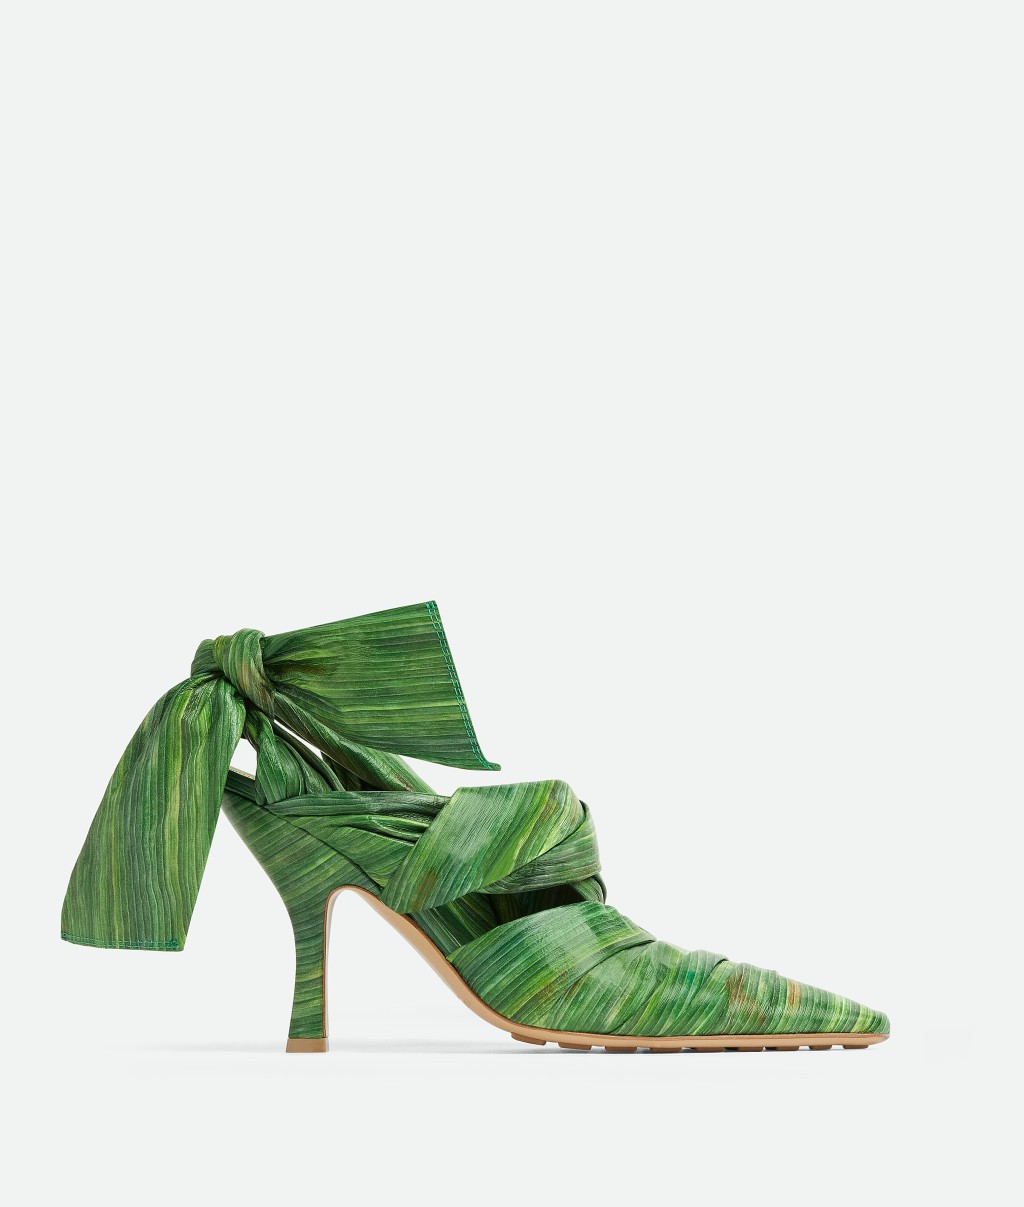 高海寧所穿的高踭鞋就是設計師以熱帶樹葉作靈感，以熱帶樹葉印花皮革製成的露跟高跟鞋。